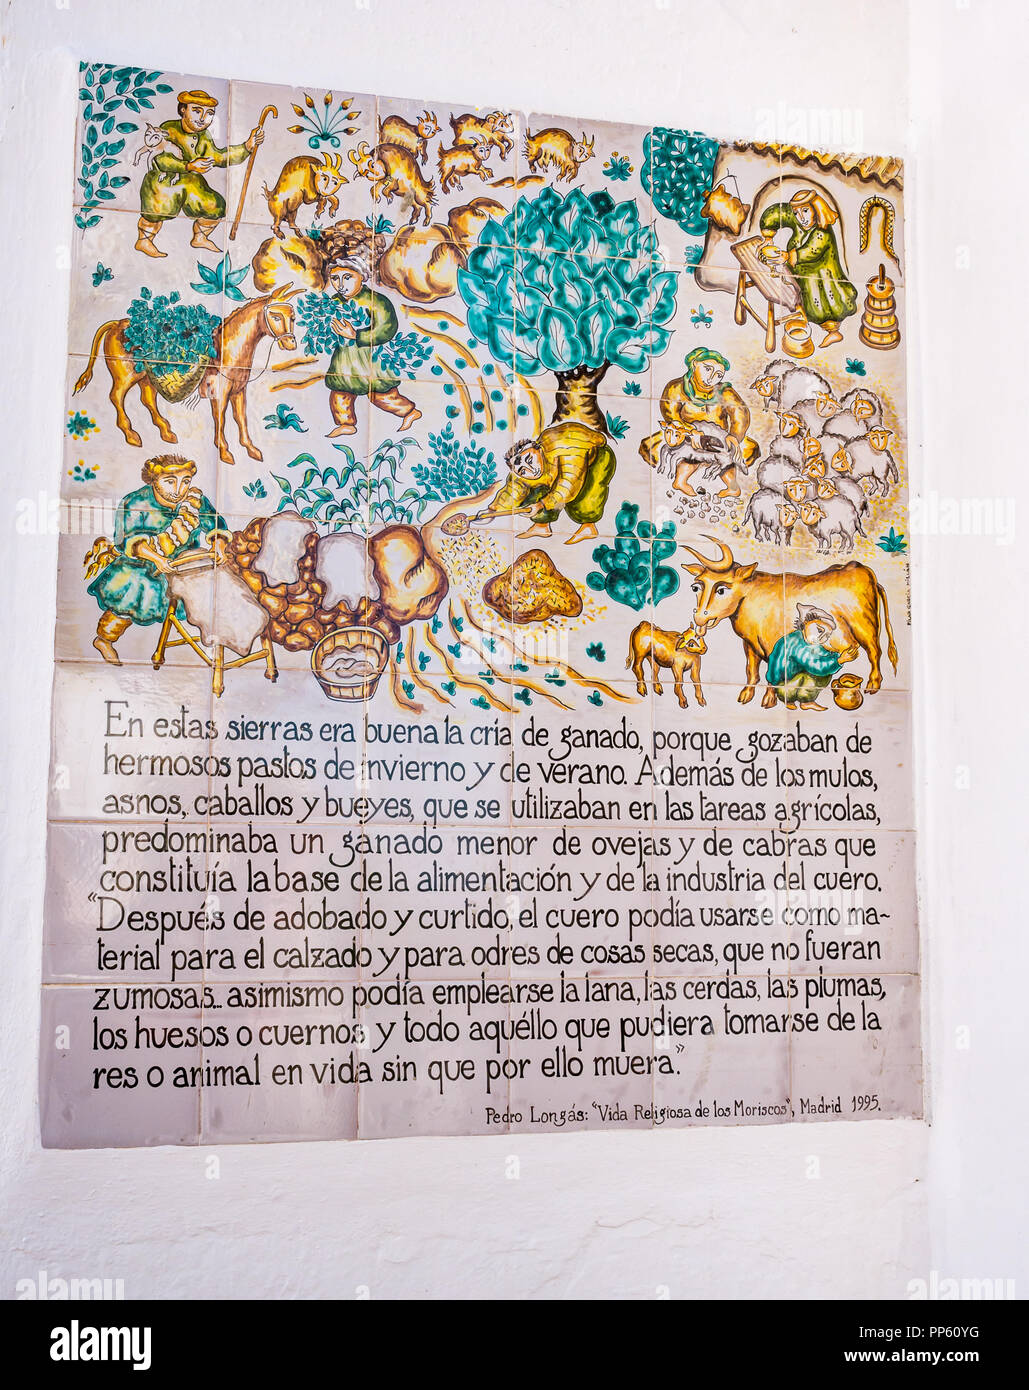 Carreaux de céramique colorée informations inscription à l'entrée à Sedella expliquant l'agriculture locale, Axarquía, Andalousie, Espagne Banque D'Images